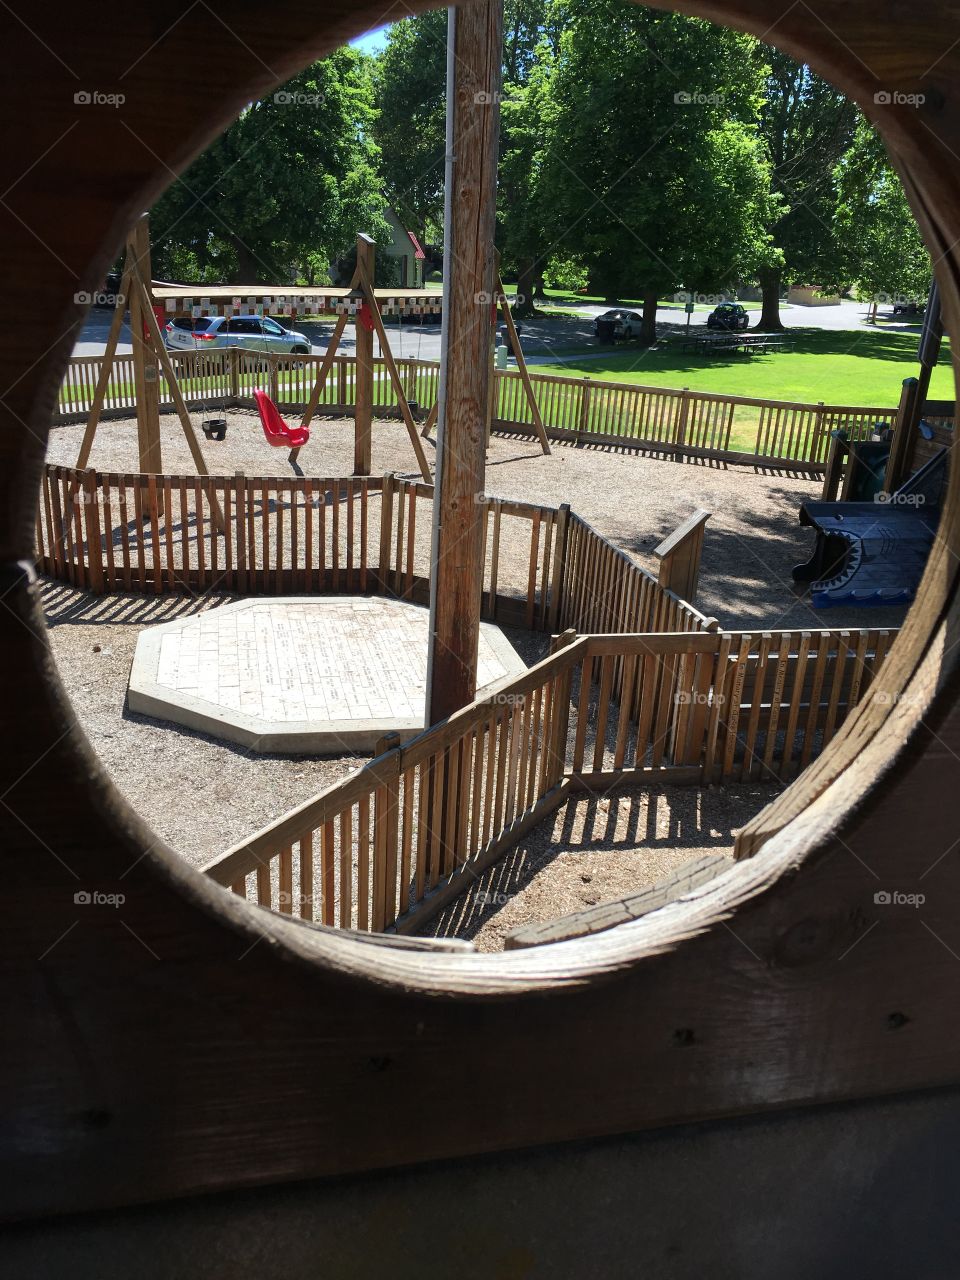 A circular view above a children’s park 